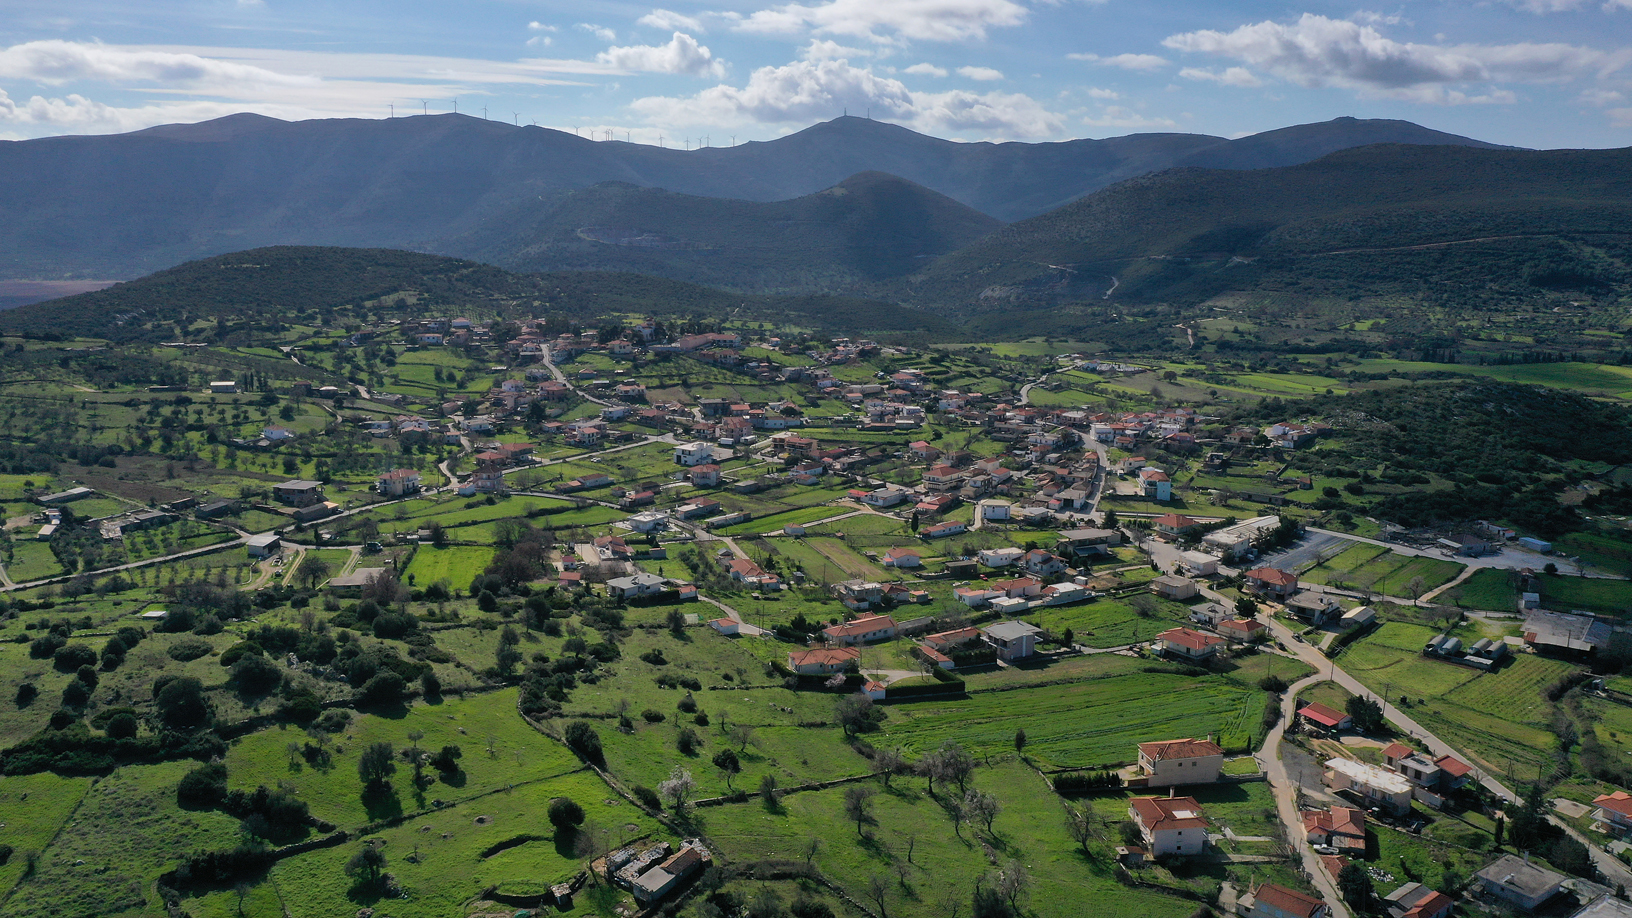 Χωριό Δύστος. Φωτογραφία: ©Βασίλης Συκάς, για τον Δήμο Κύμης-Αλιβερίου